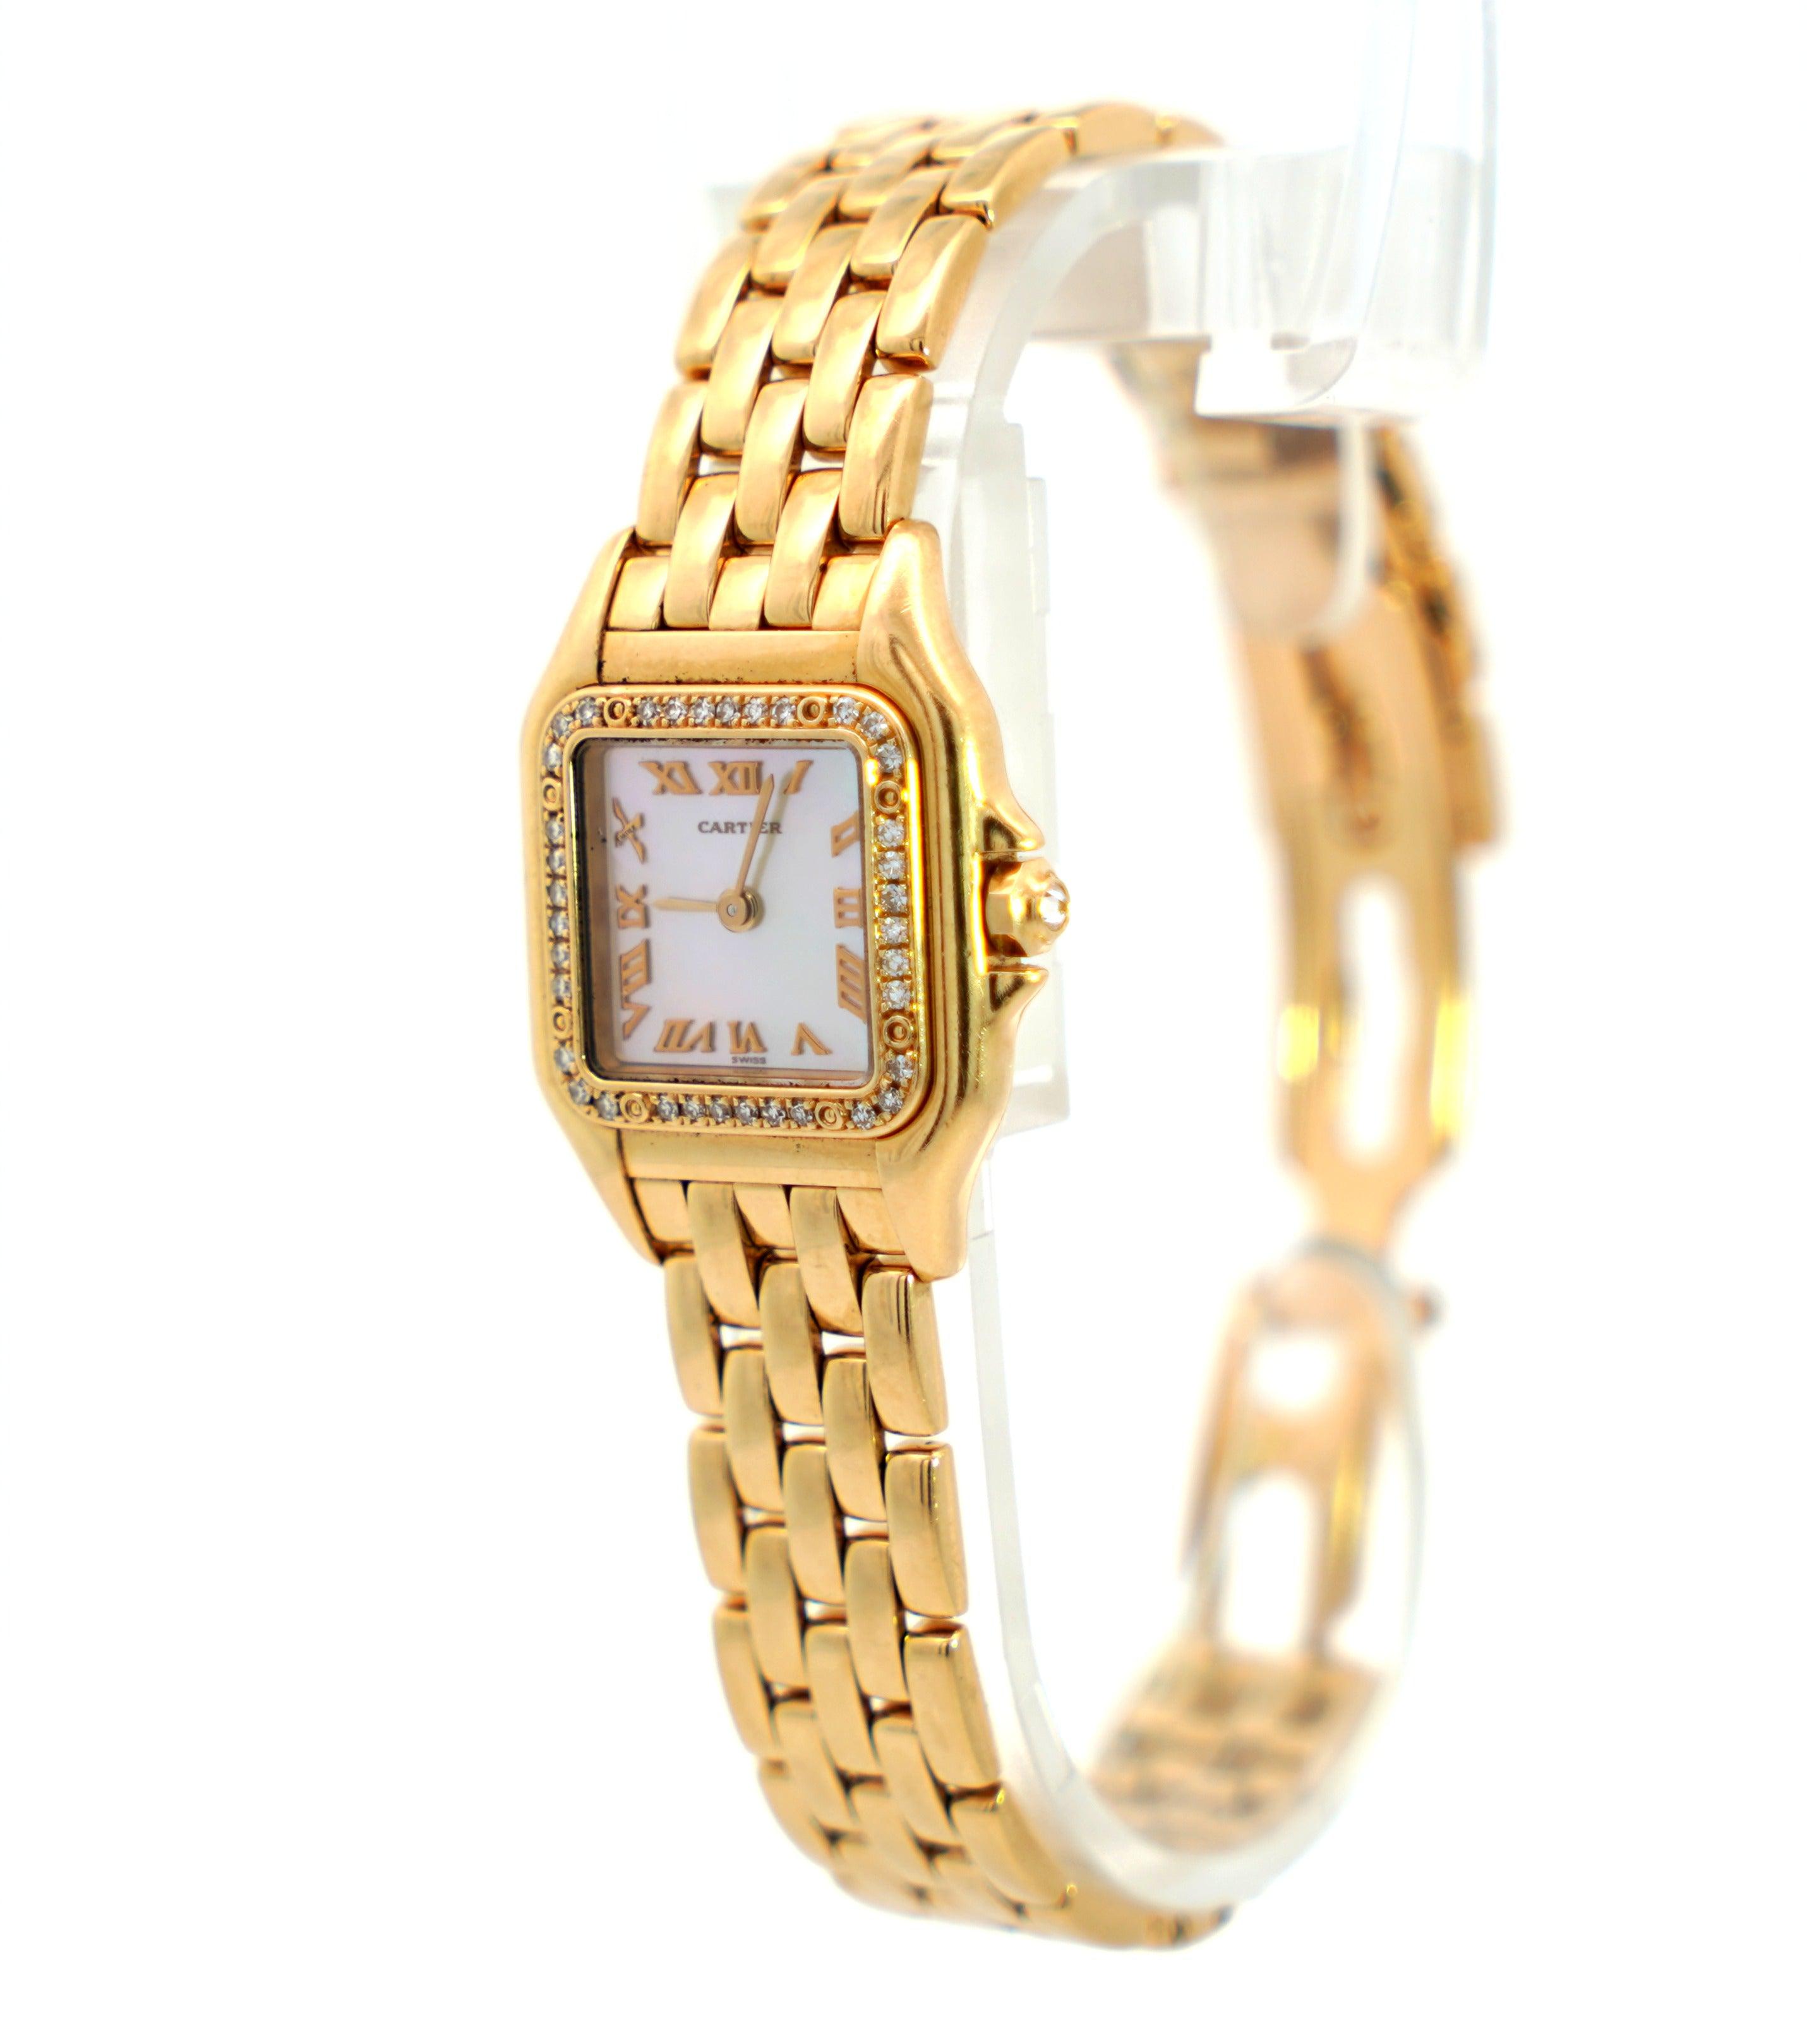 Cartier-Panthere-MOP-22mm-Ref_-1280-2-Factory-Diamond-Bezel-Watch-in-18K-Yellow-Gold-Watches-2.jpg